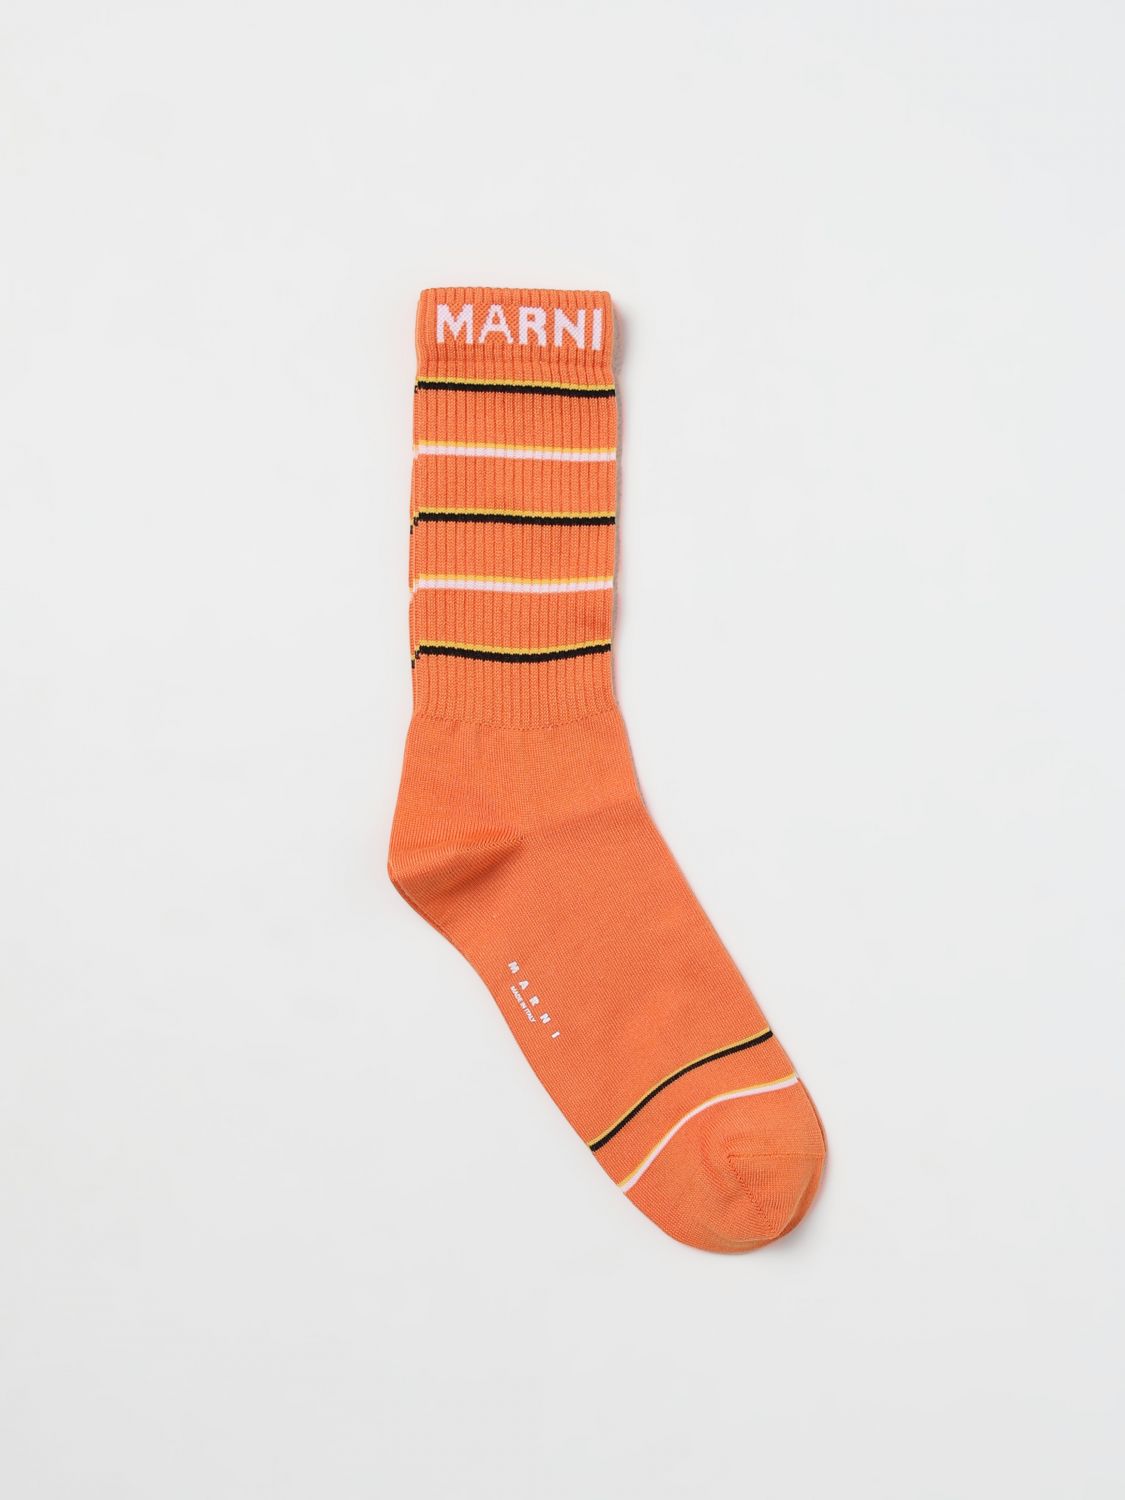 Marni Socks MARNI Men color Orange